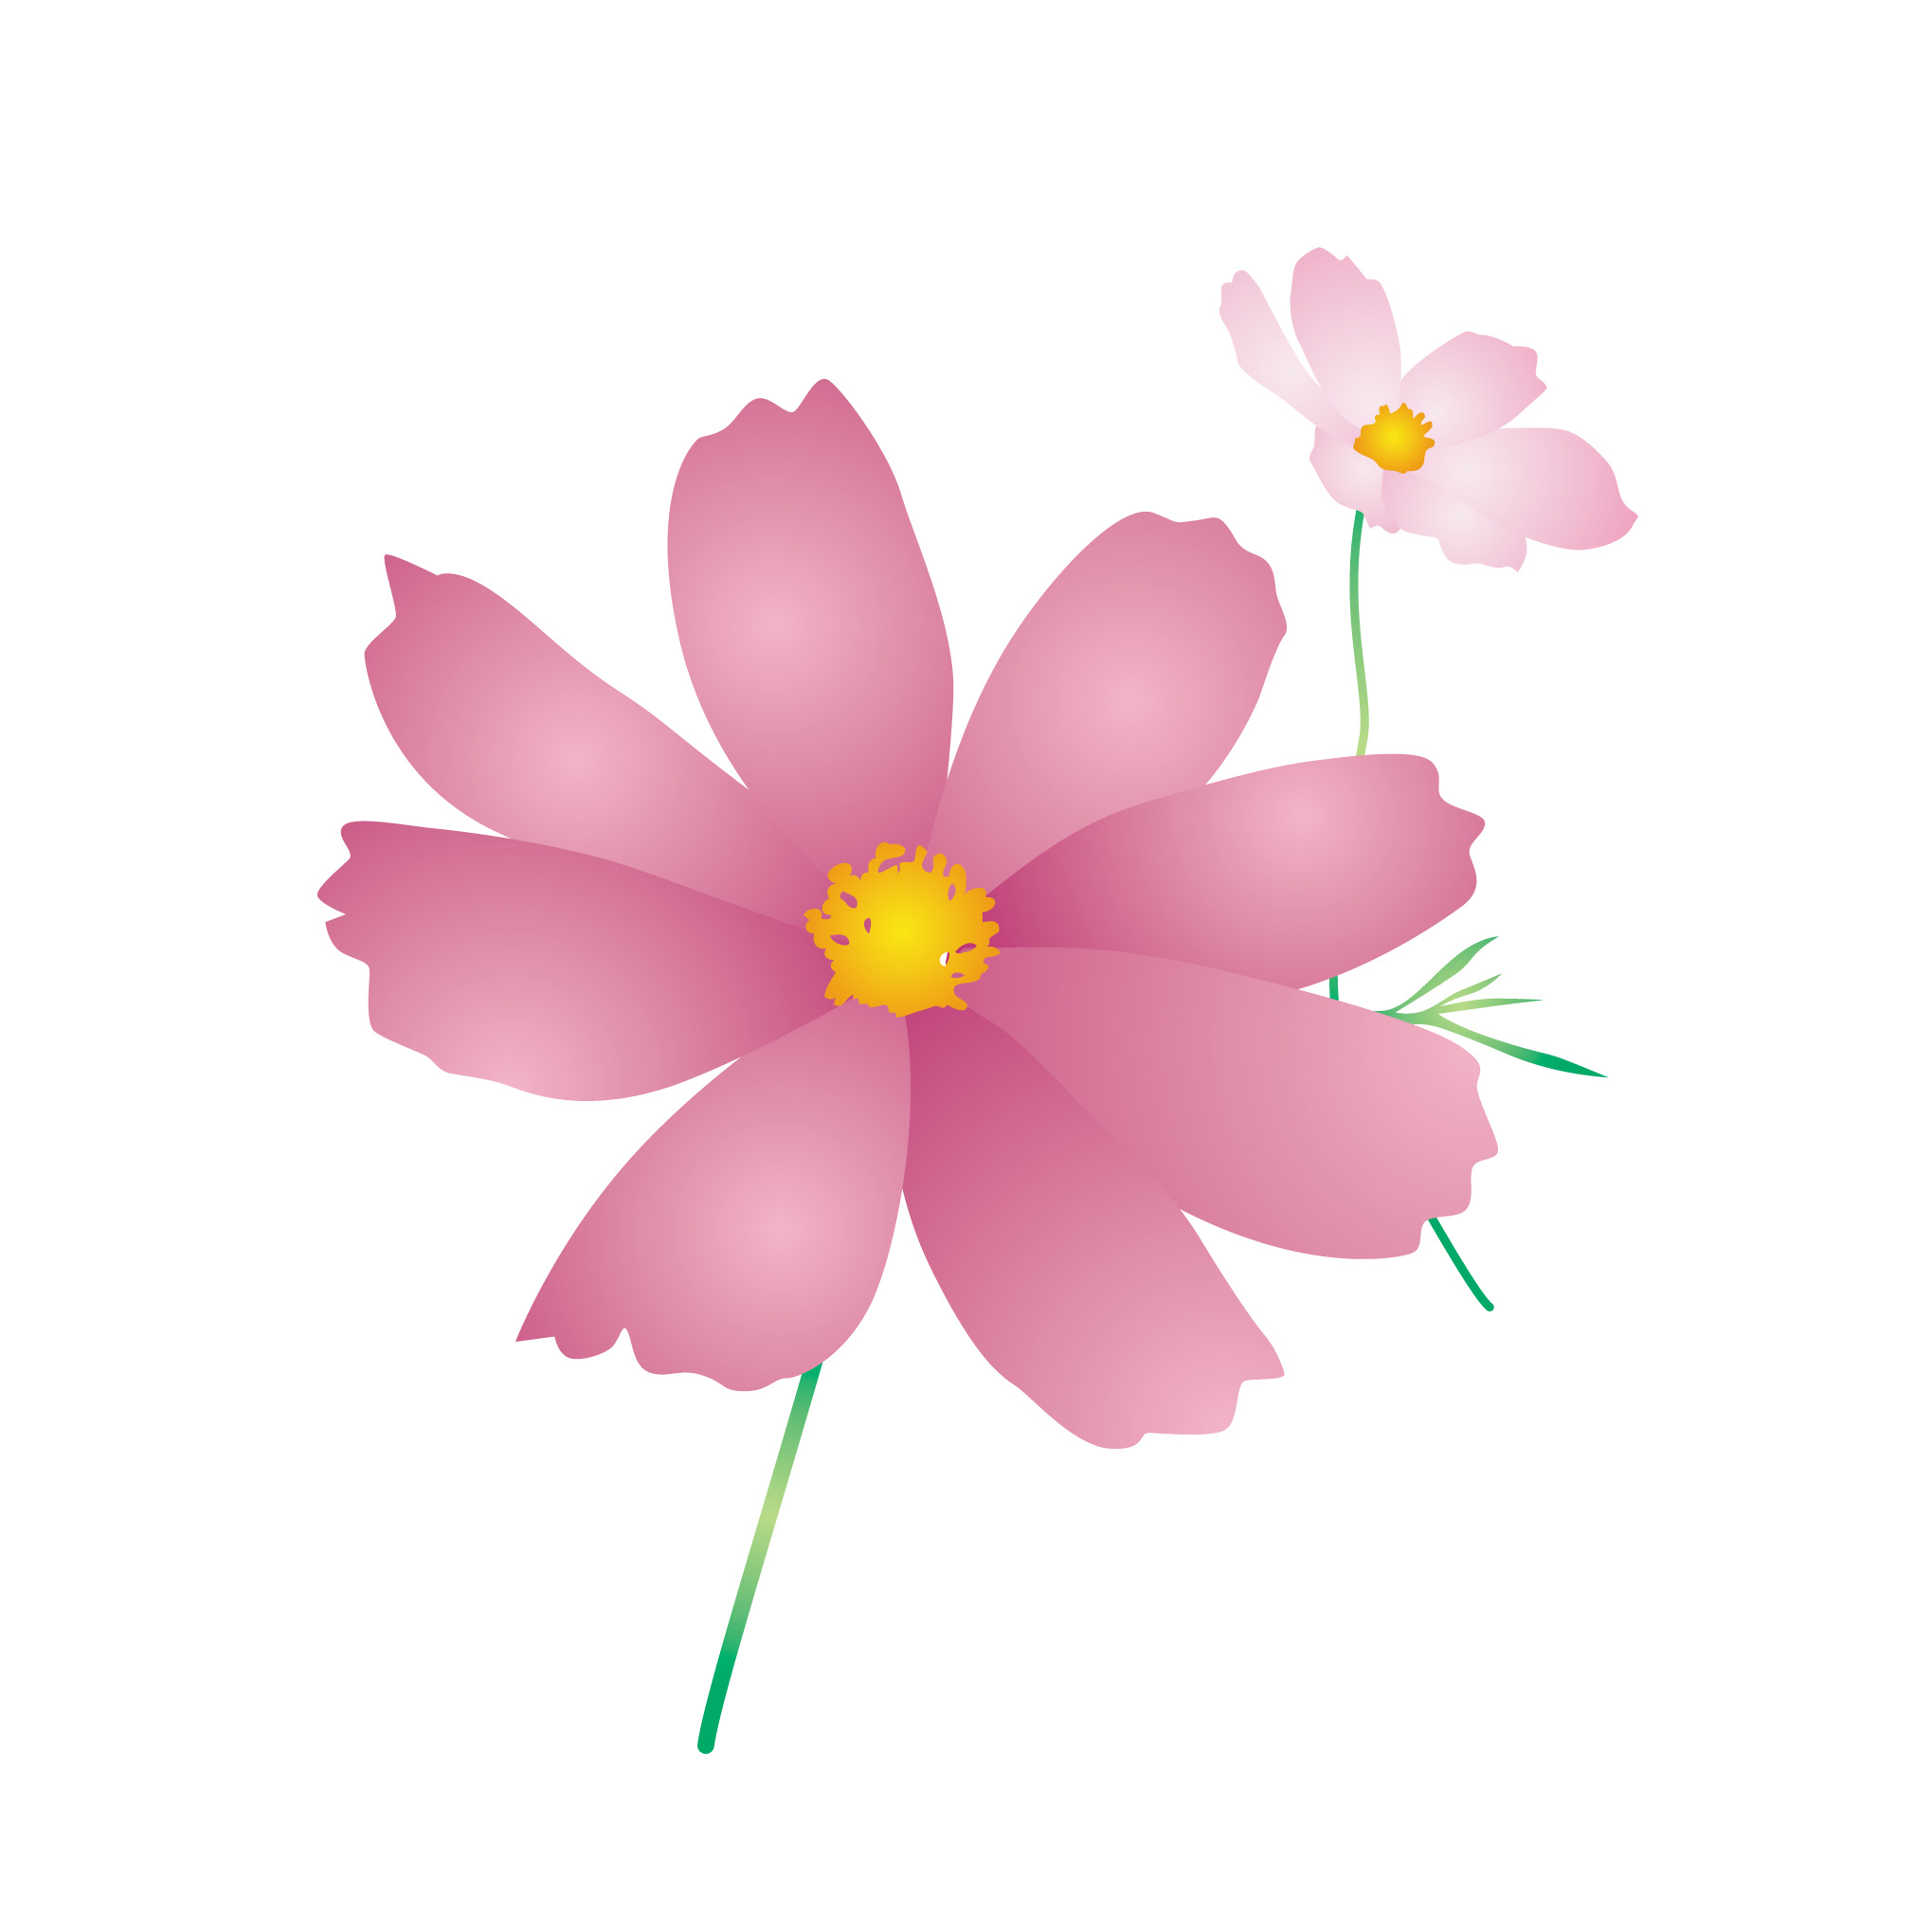 美しい花の画像 ベスト50 9月 花 イラスト